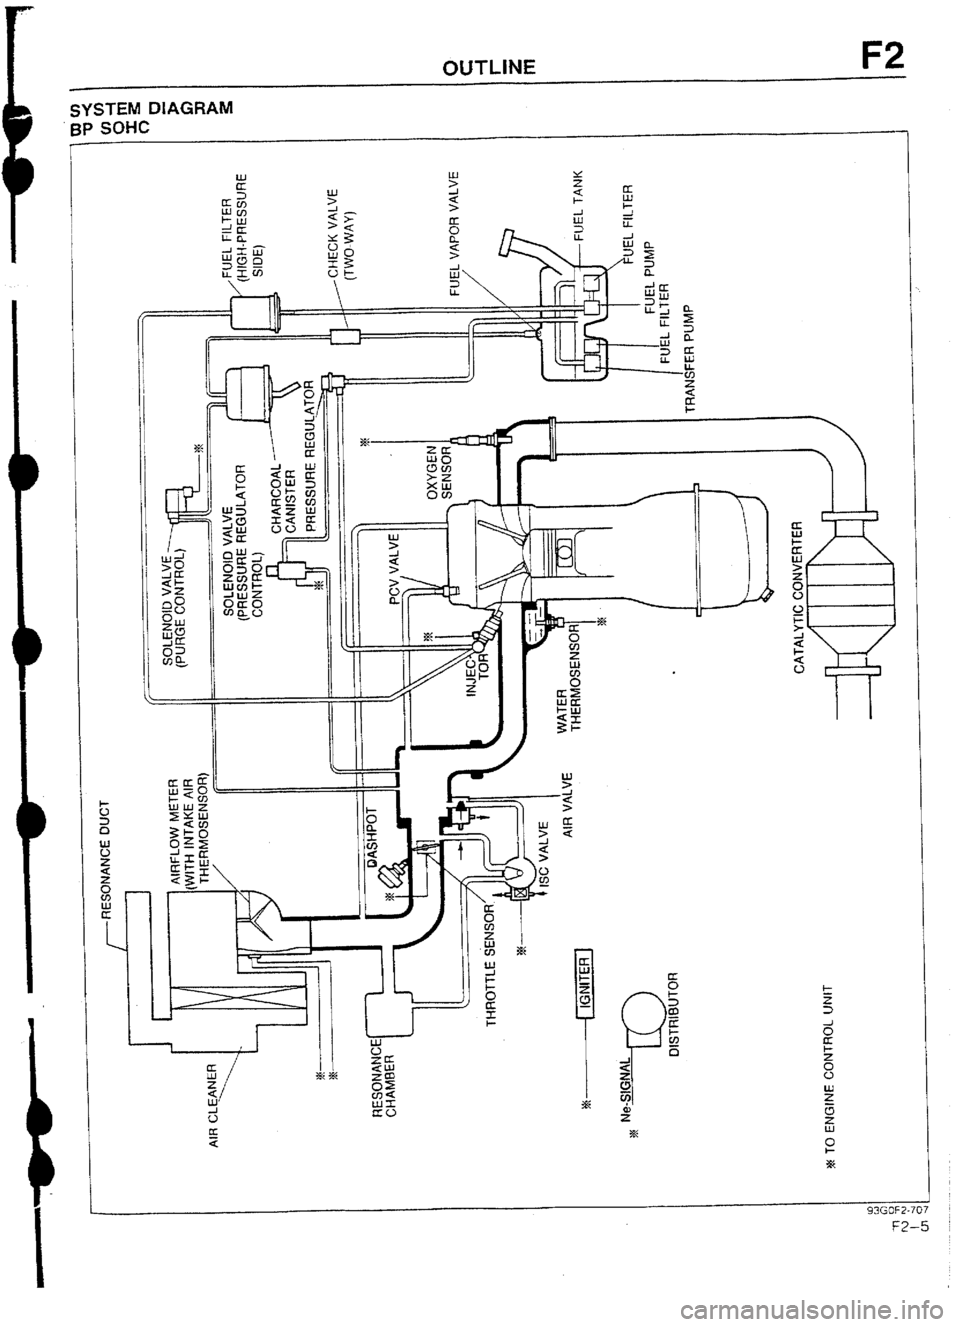 MAZDA 232 1990  Workshop Manual Suplement OUTLINE F2 
SYSTEM DIAGRAM 
BP SOHC 
1 
J 
I 
U 
” 
a 
1 
93GOF2-707 
m-5  